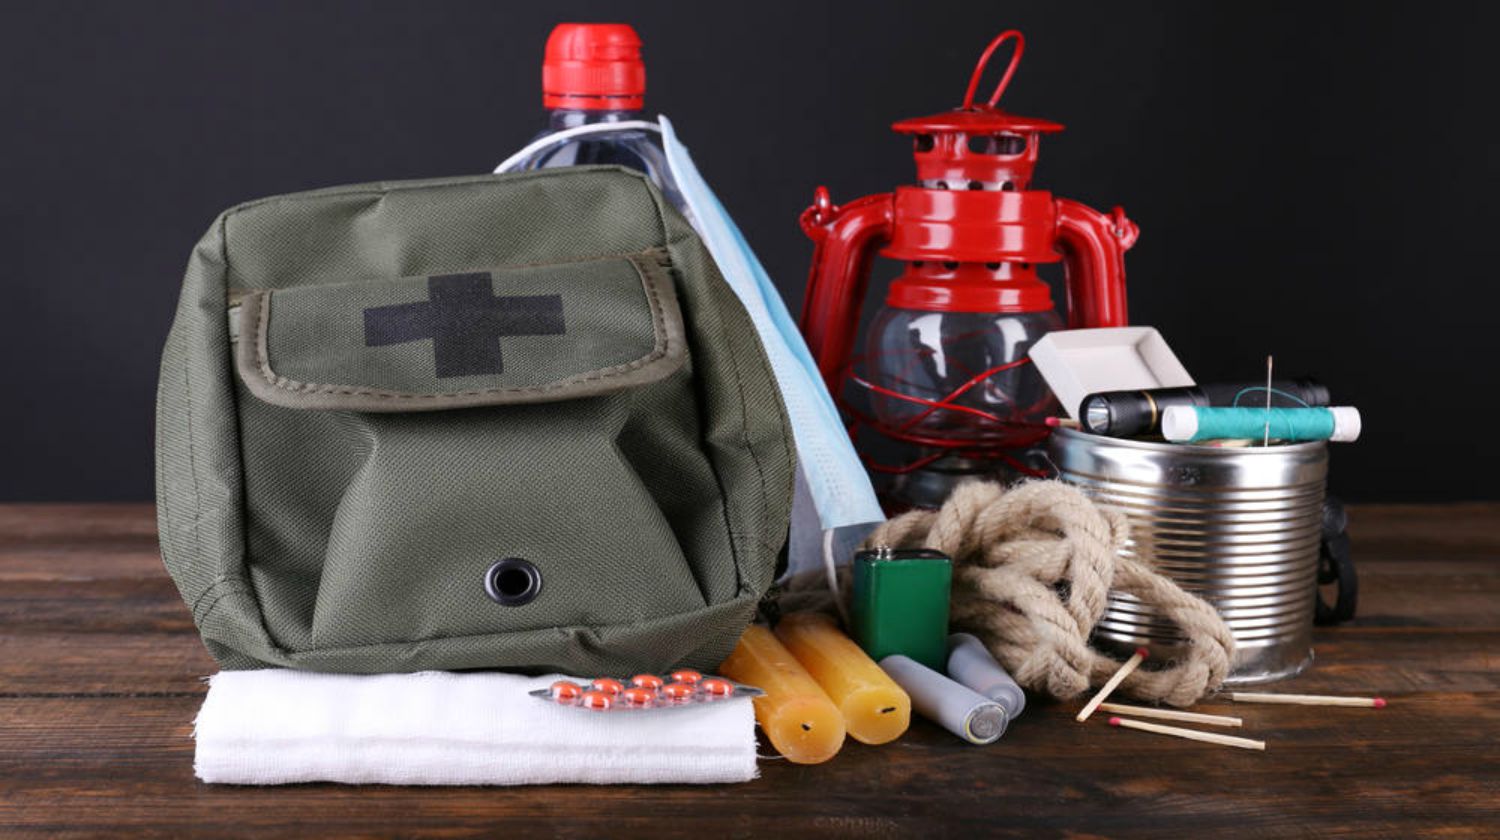 Feature | Survival kit bag | Building A Bug Out Bag